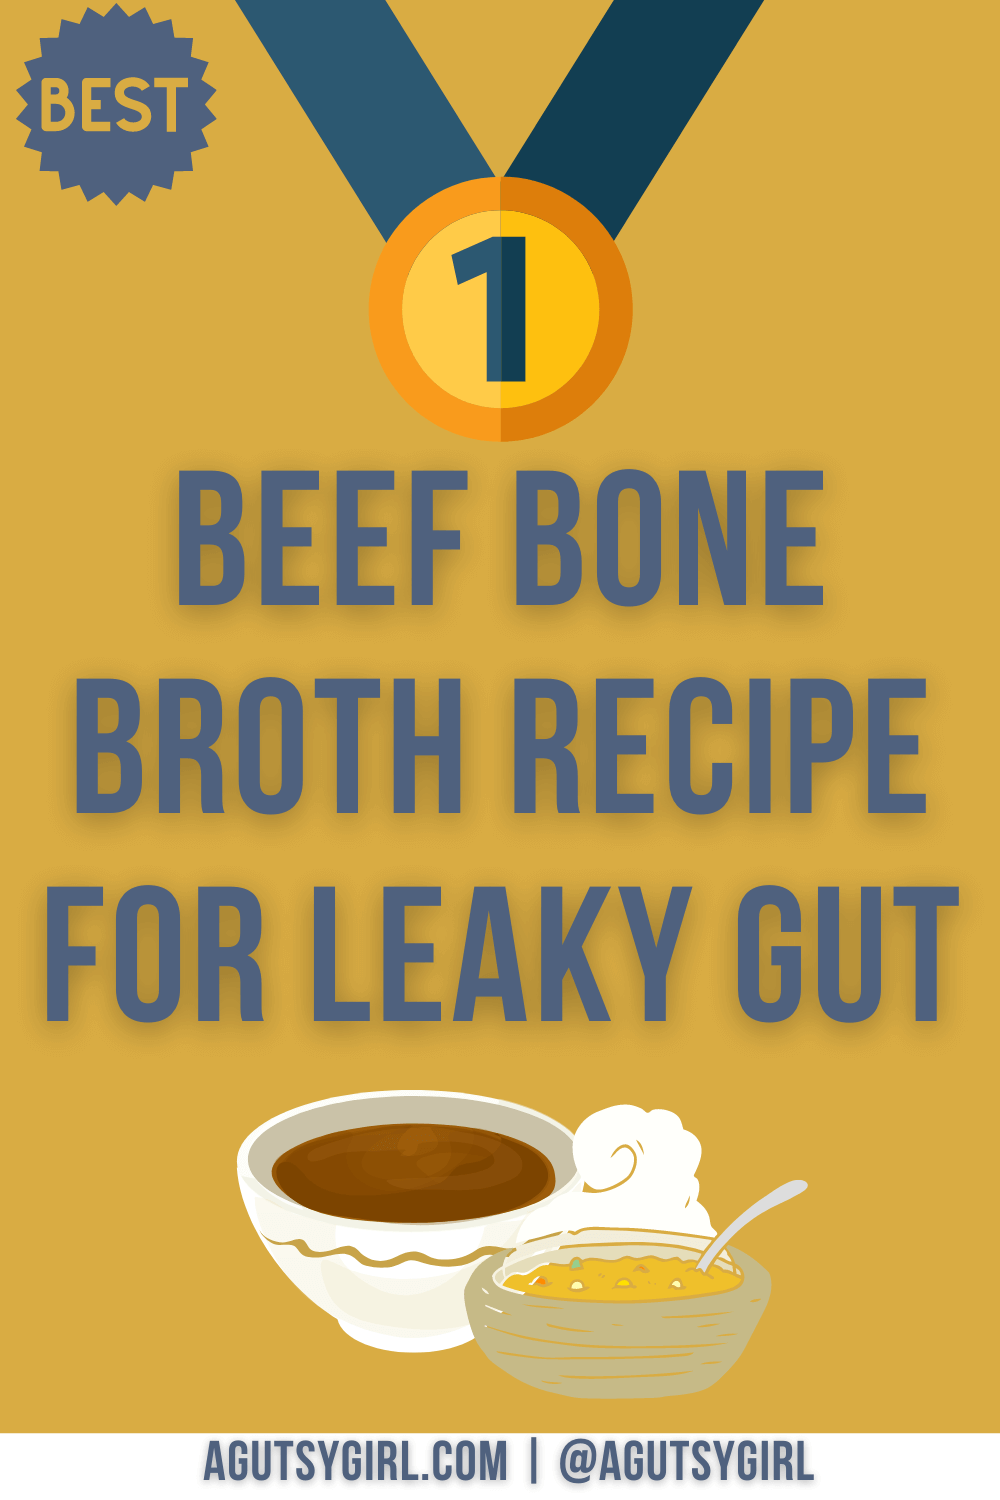 Best Beef Bone Broth Recipe for Leaky Gut agutsygirl.com #guthealth #beefbonebroth #bonebroth #leakygut #leakygutdiet best